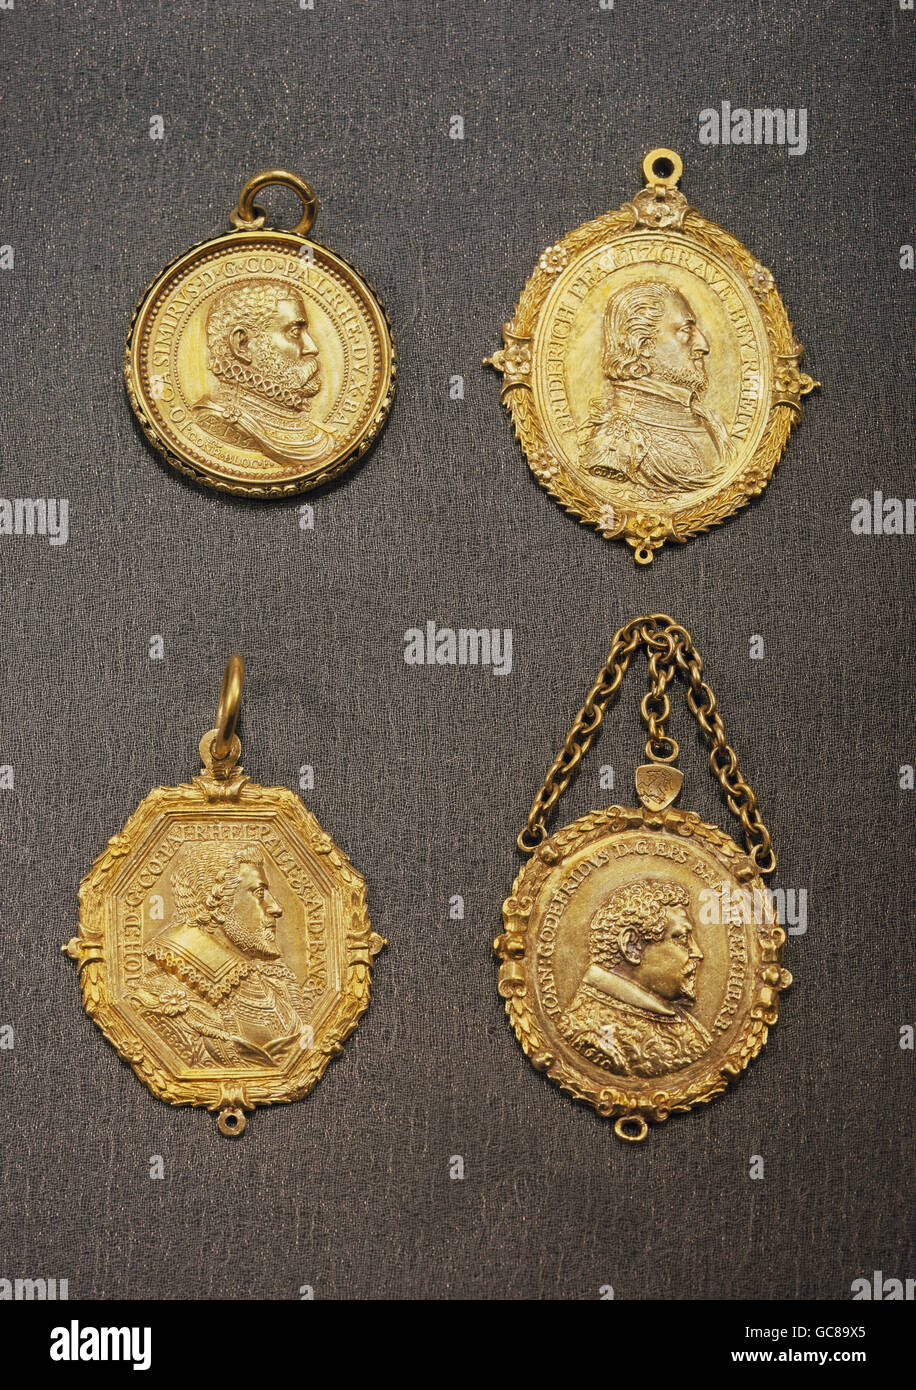 Bildende Kunst, Medaillen, "Gnadenpfennige", oben links: John Casimir,  Pfalzgraf von Simmern (1543-1592), von Conrad Bloc,